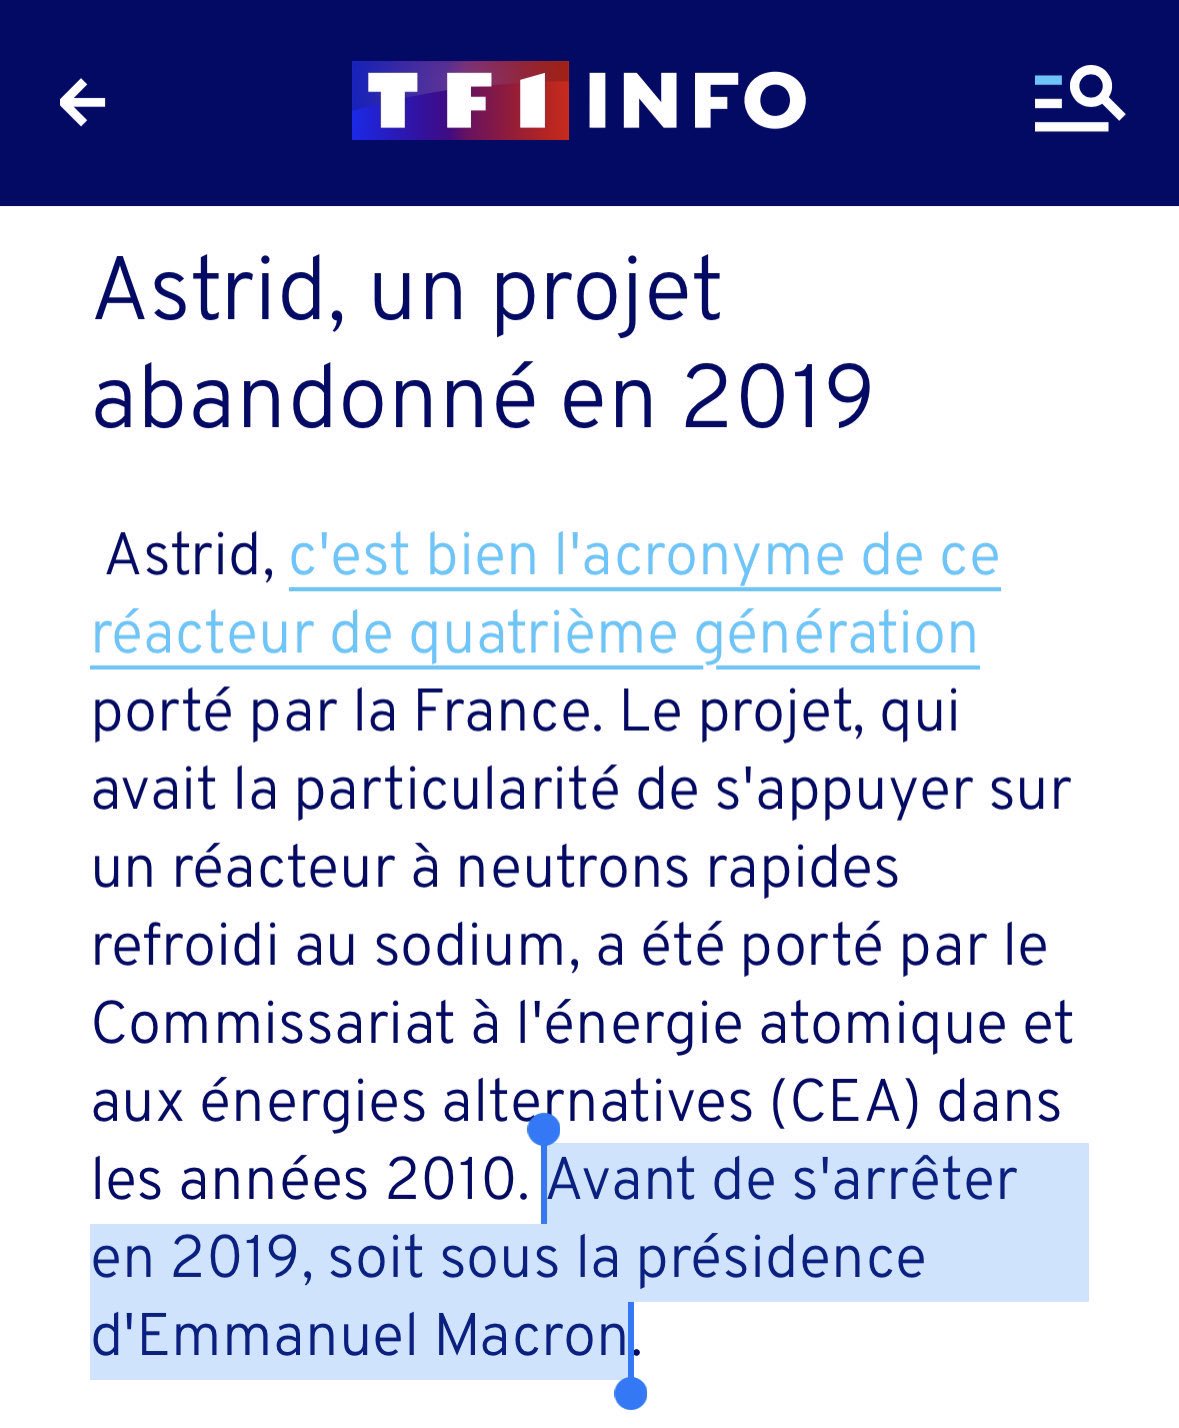 N. Dupont-Aignan on X: "En faisant semblant de « debunker » une information  de milieu « complotiste », TF1 confirme que le projet Astrid, qui pouvait  nous assurer une indépendance énergétique, a